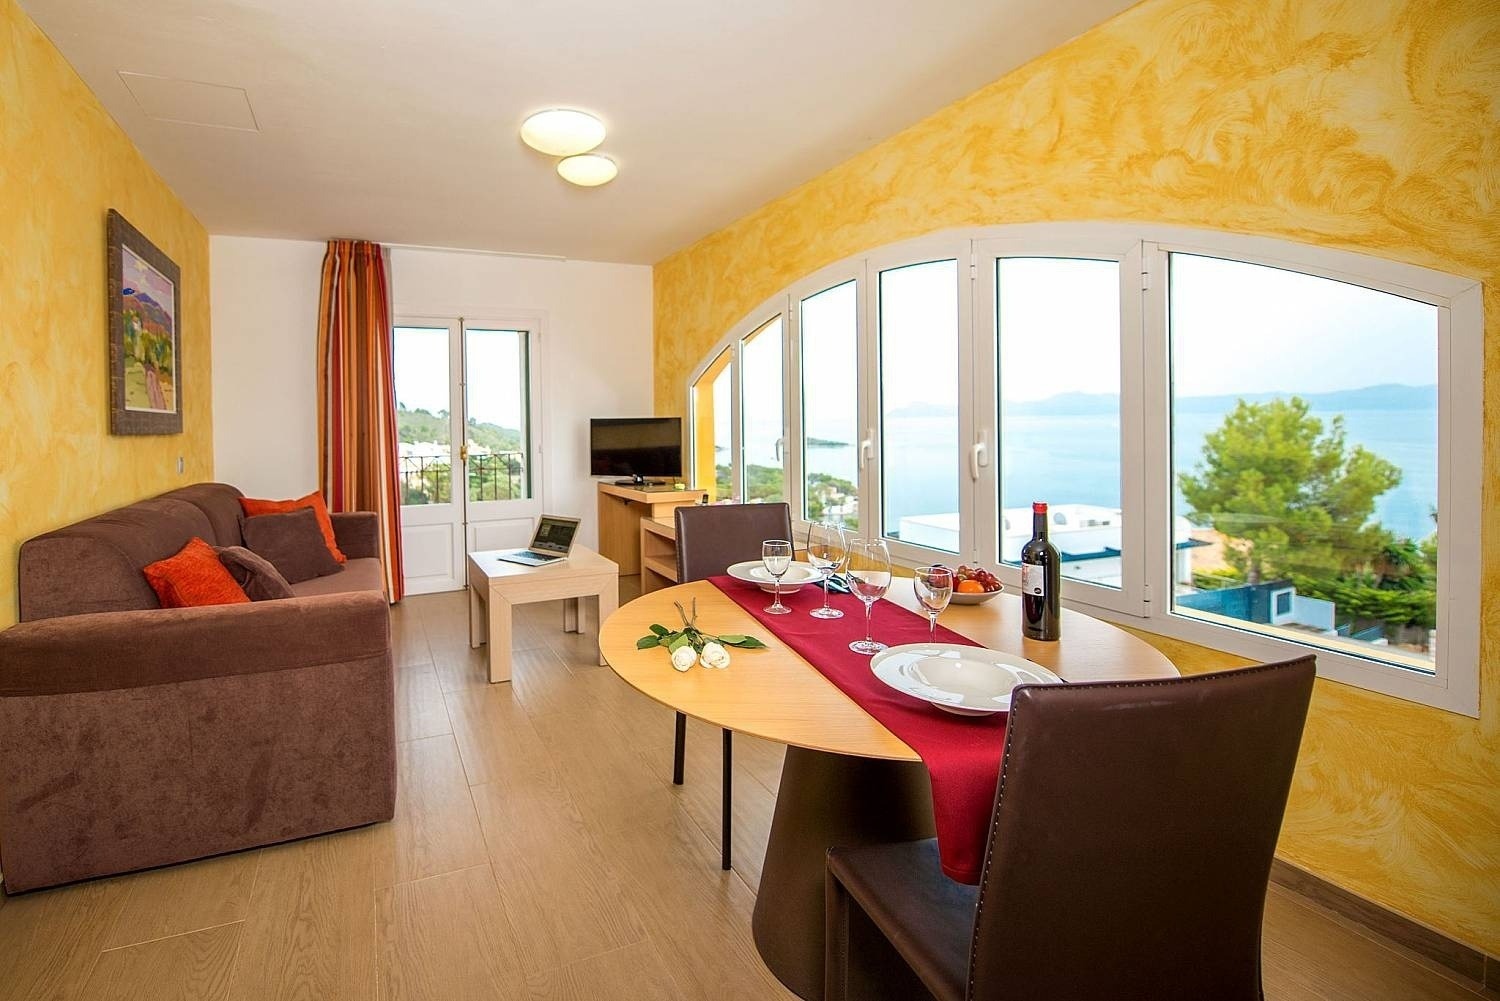 Salón y terraza del apartamento en el hotel Ona Aucanada al Norte de Mallorca 